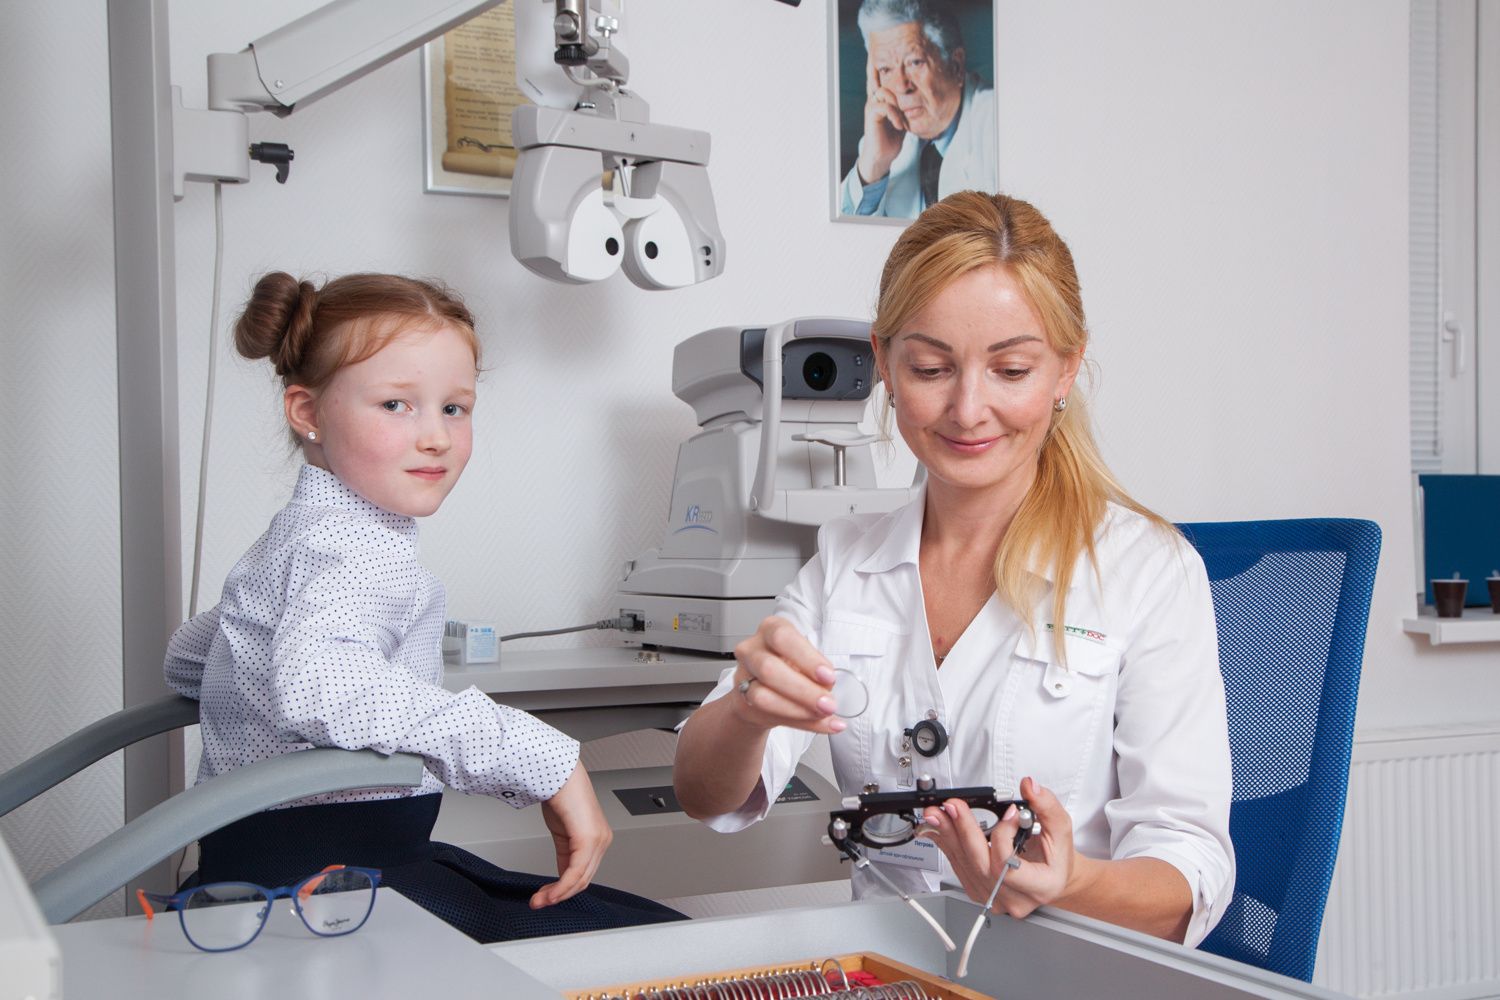 Врач
рекомендует обращаться к детскому офтальмологу в специализированную клинику